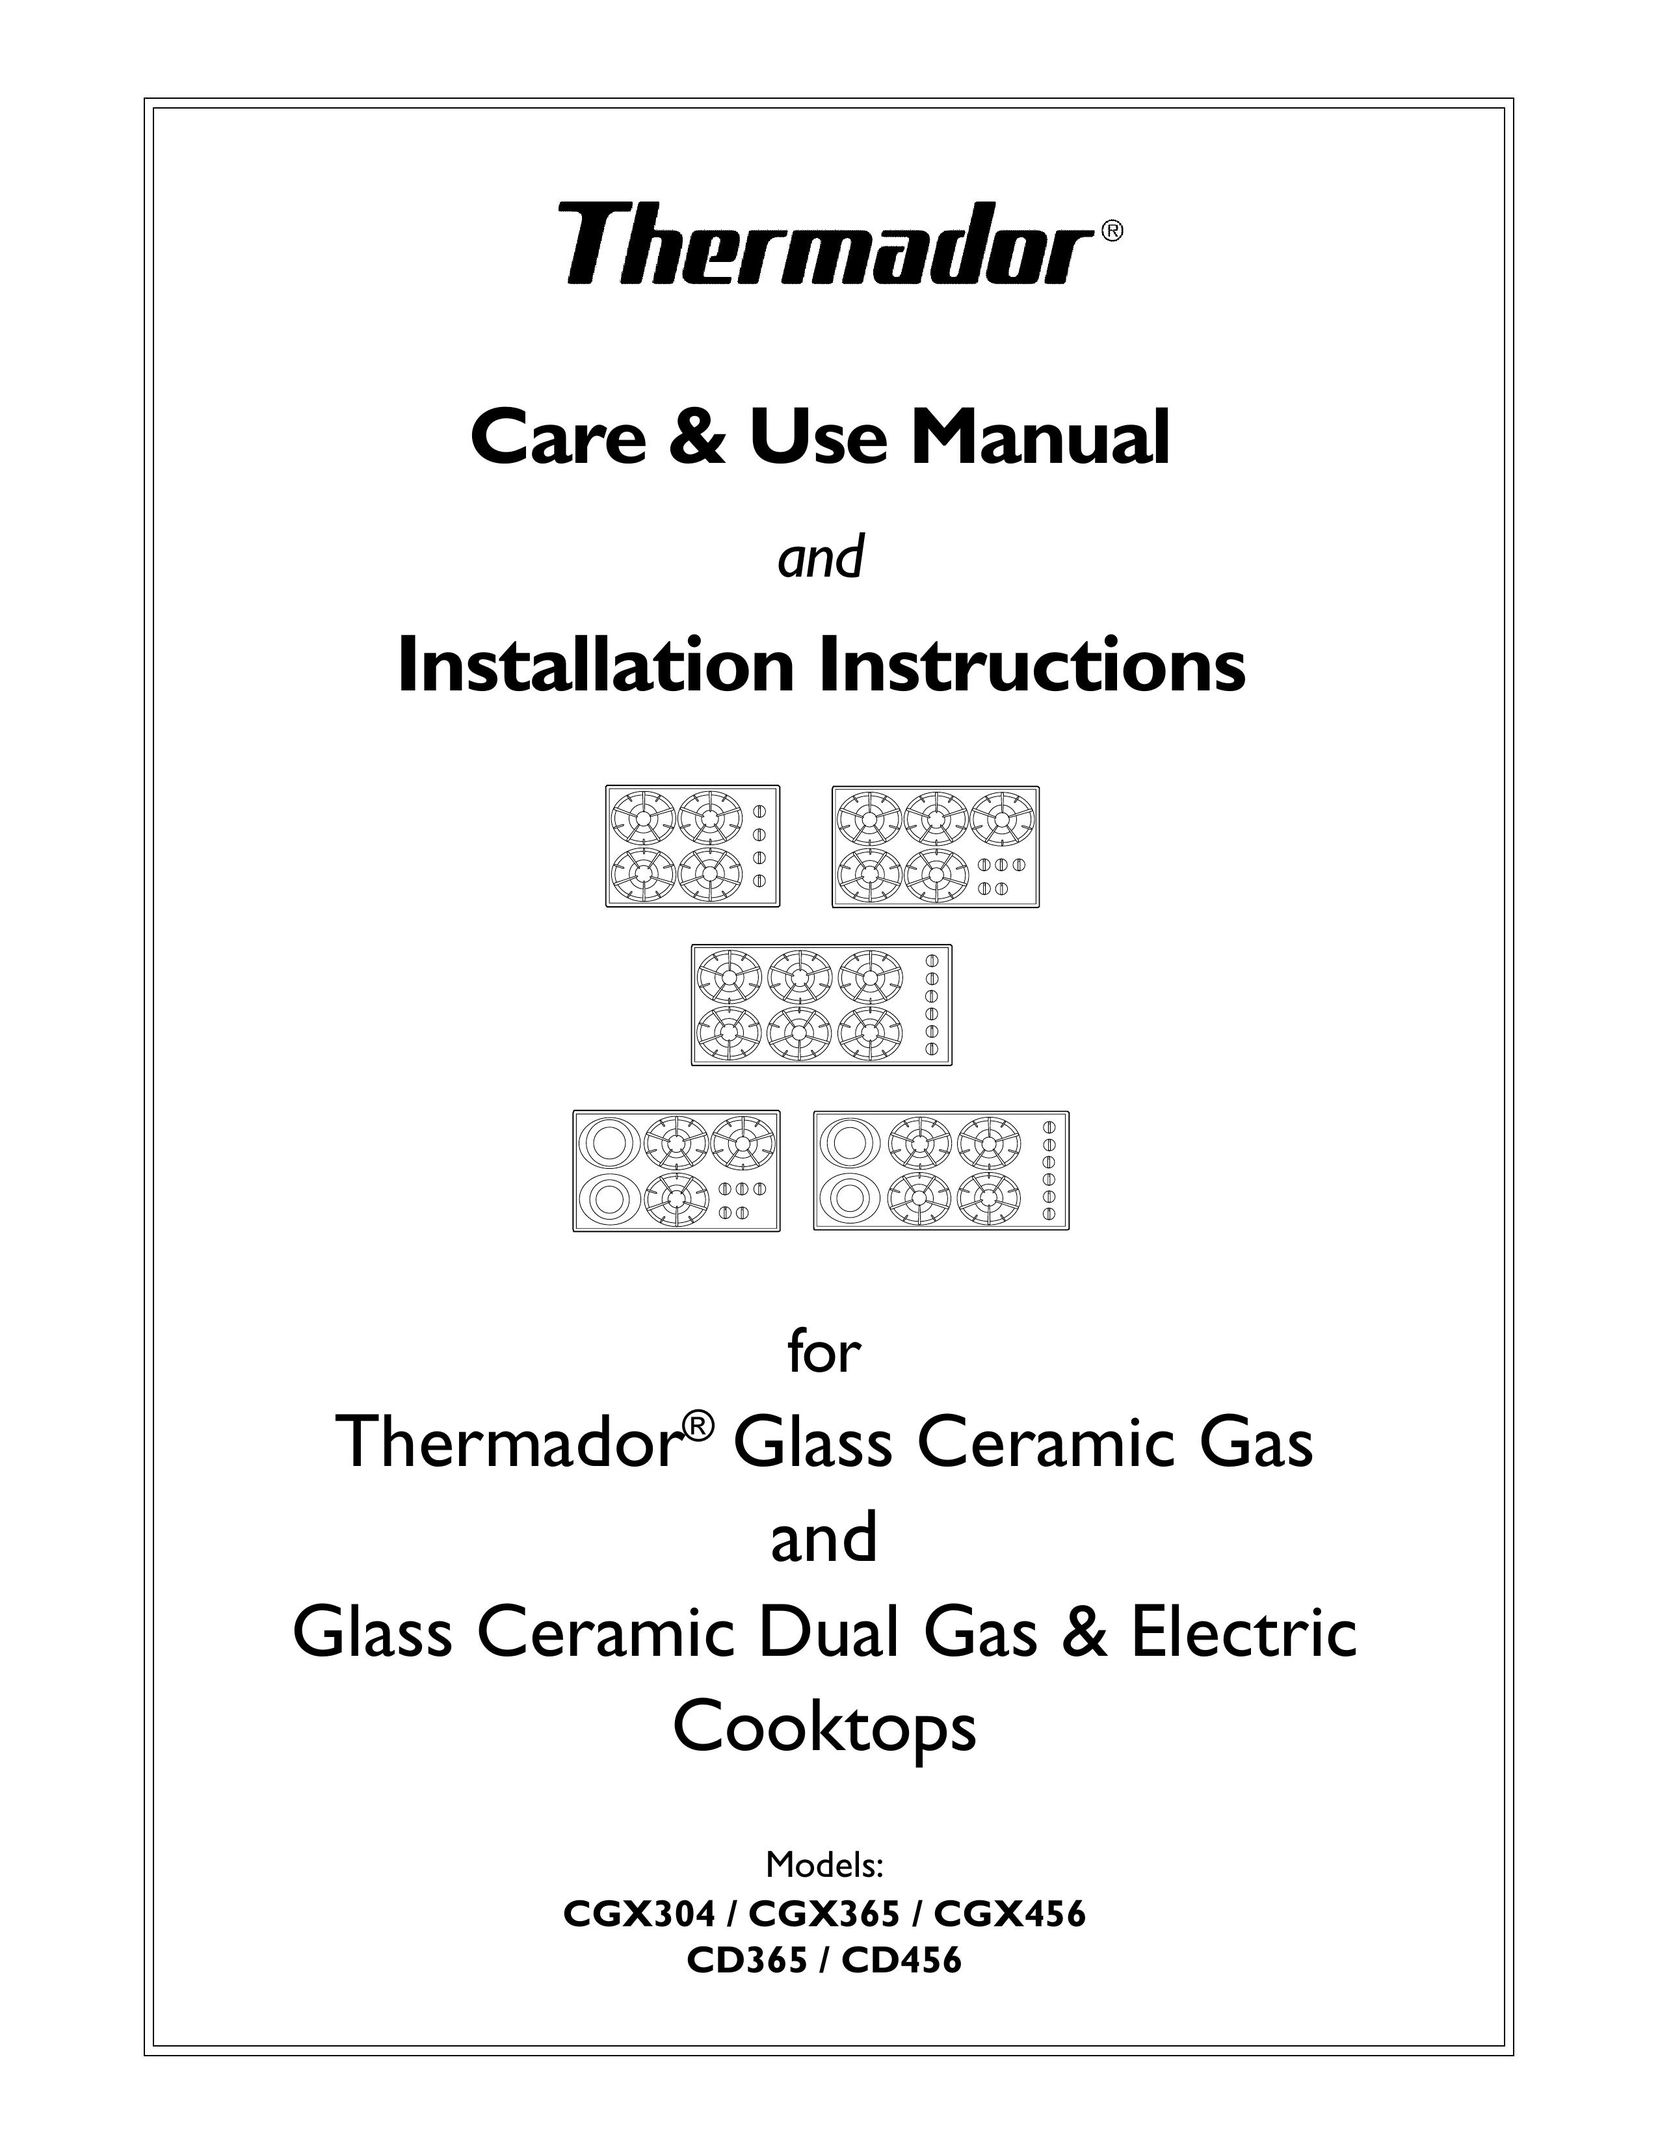 Thermador CGX365 Cooktop User Manual